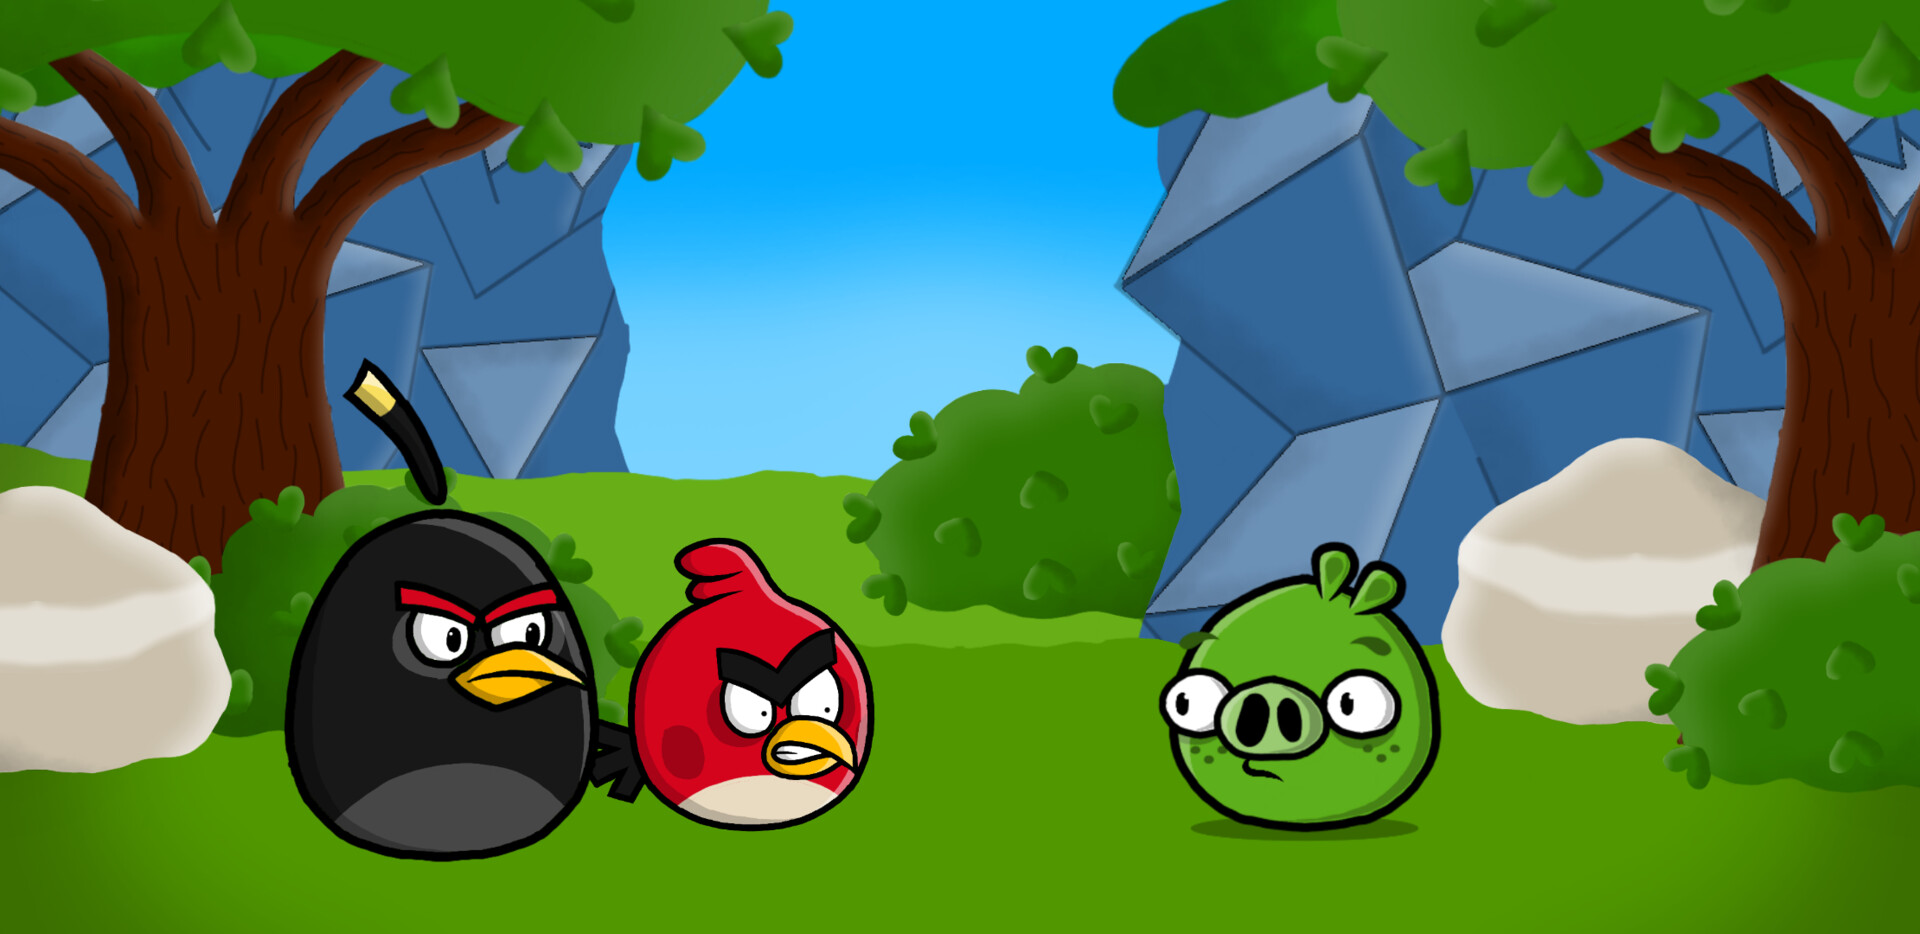 ArtStation - FNF : Indie Cross - Sans Full Week (Angry Birds Mix)